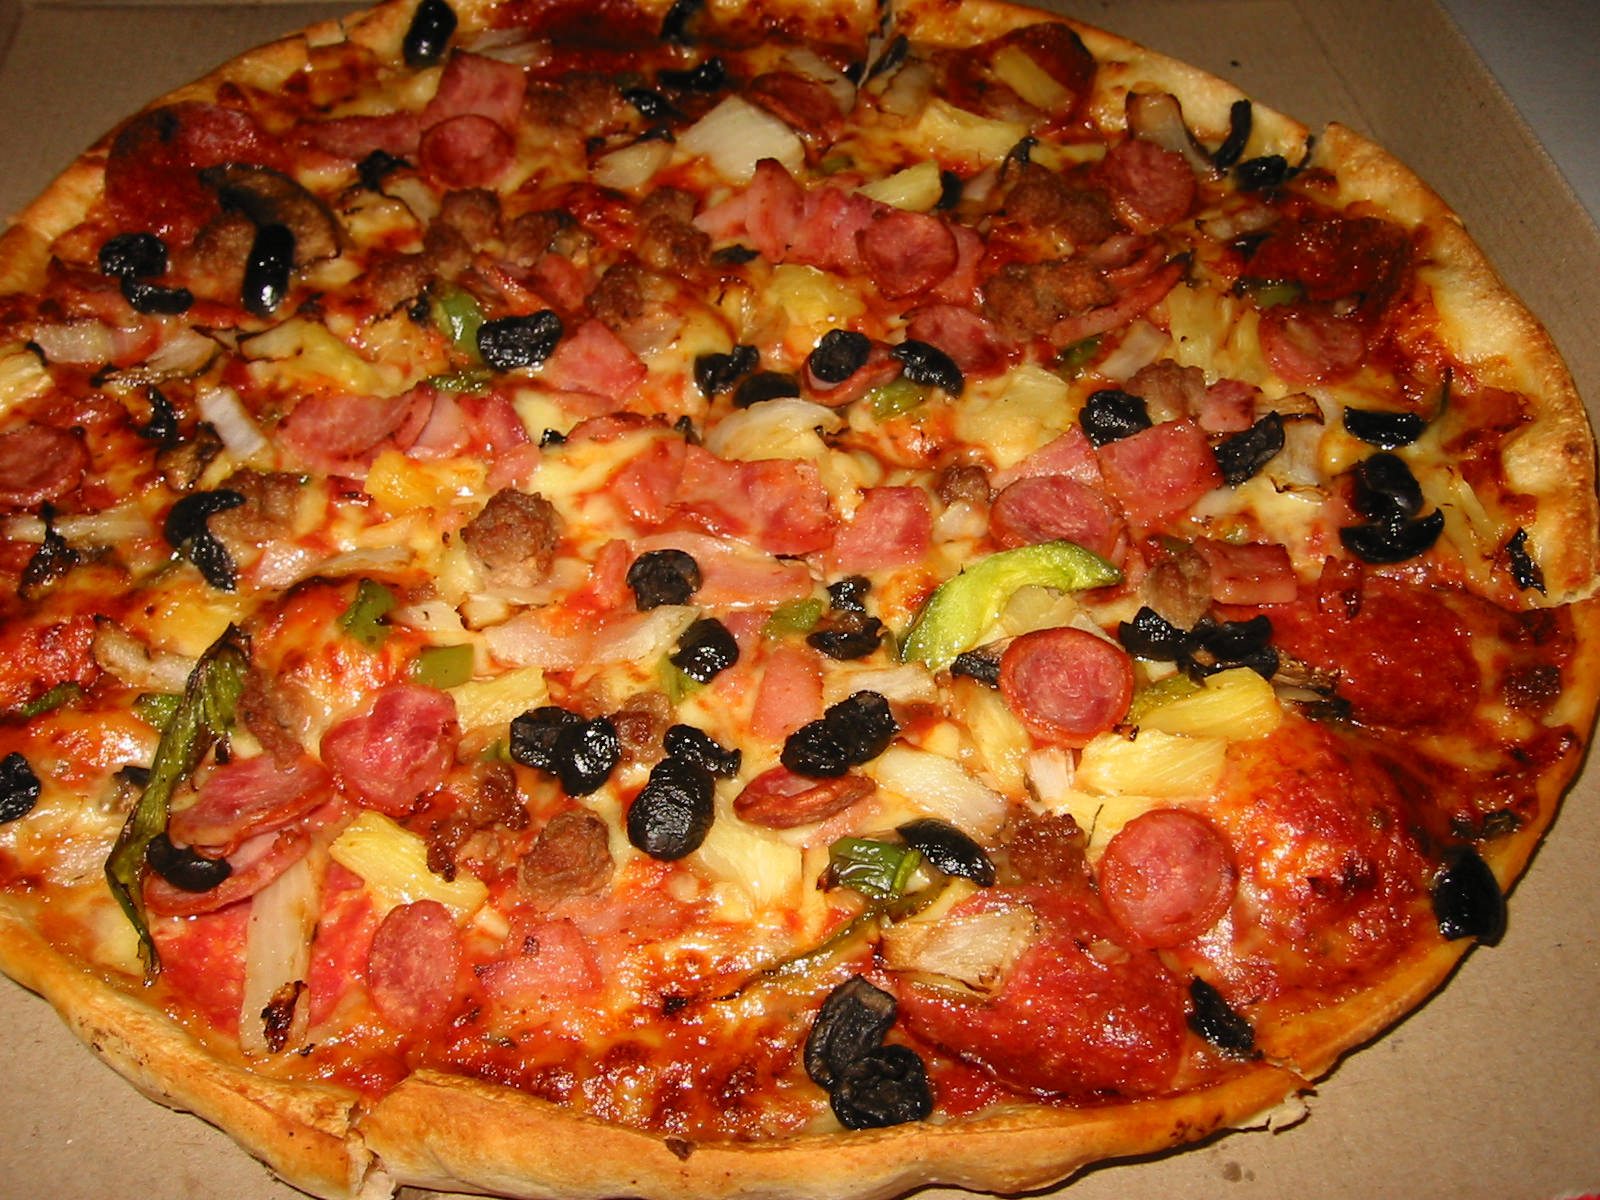 Super Supreme Pizza from Pizza Hut